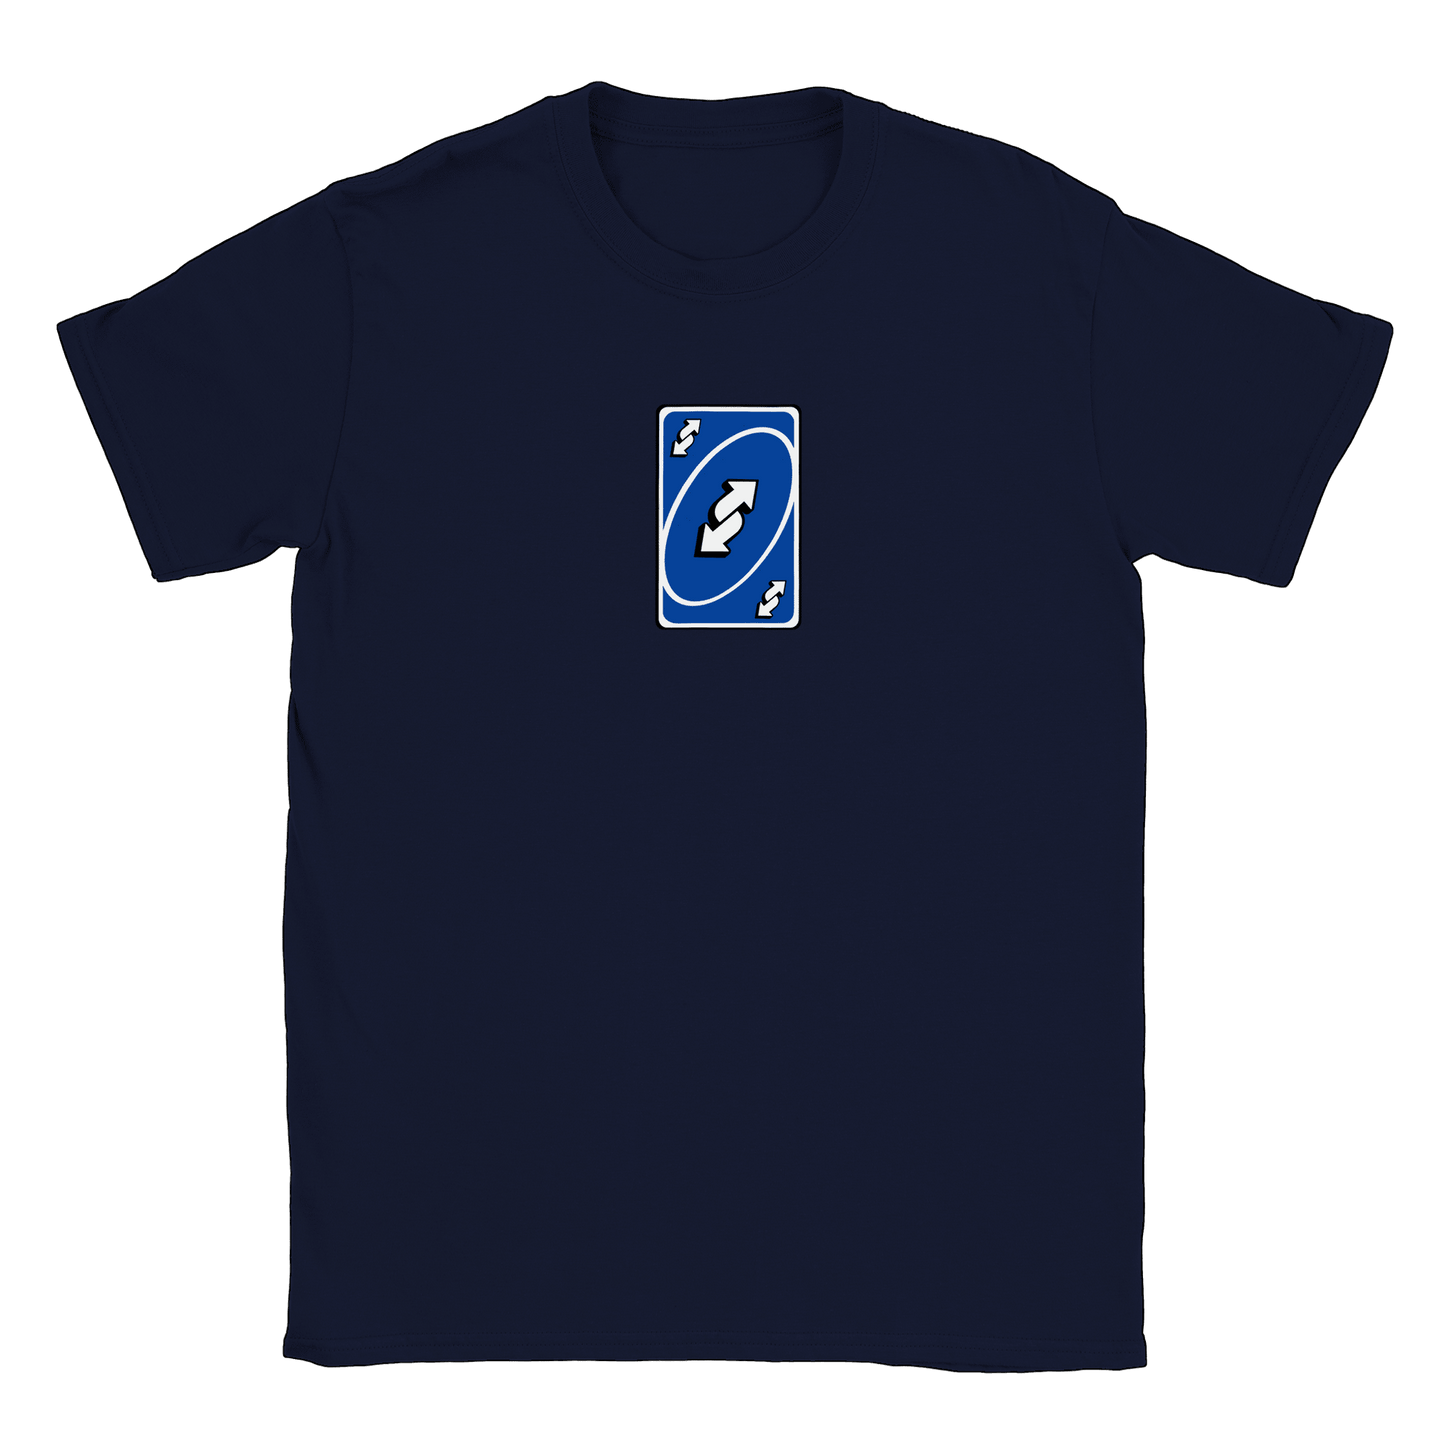 Vändkort - T-shirt Navy